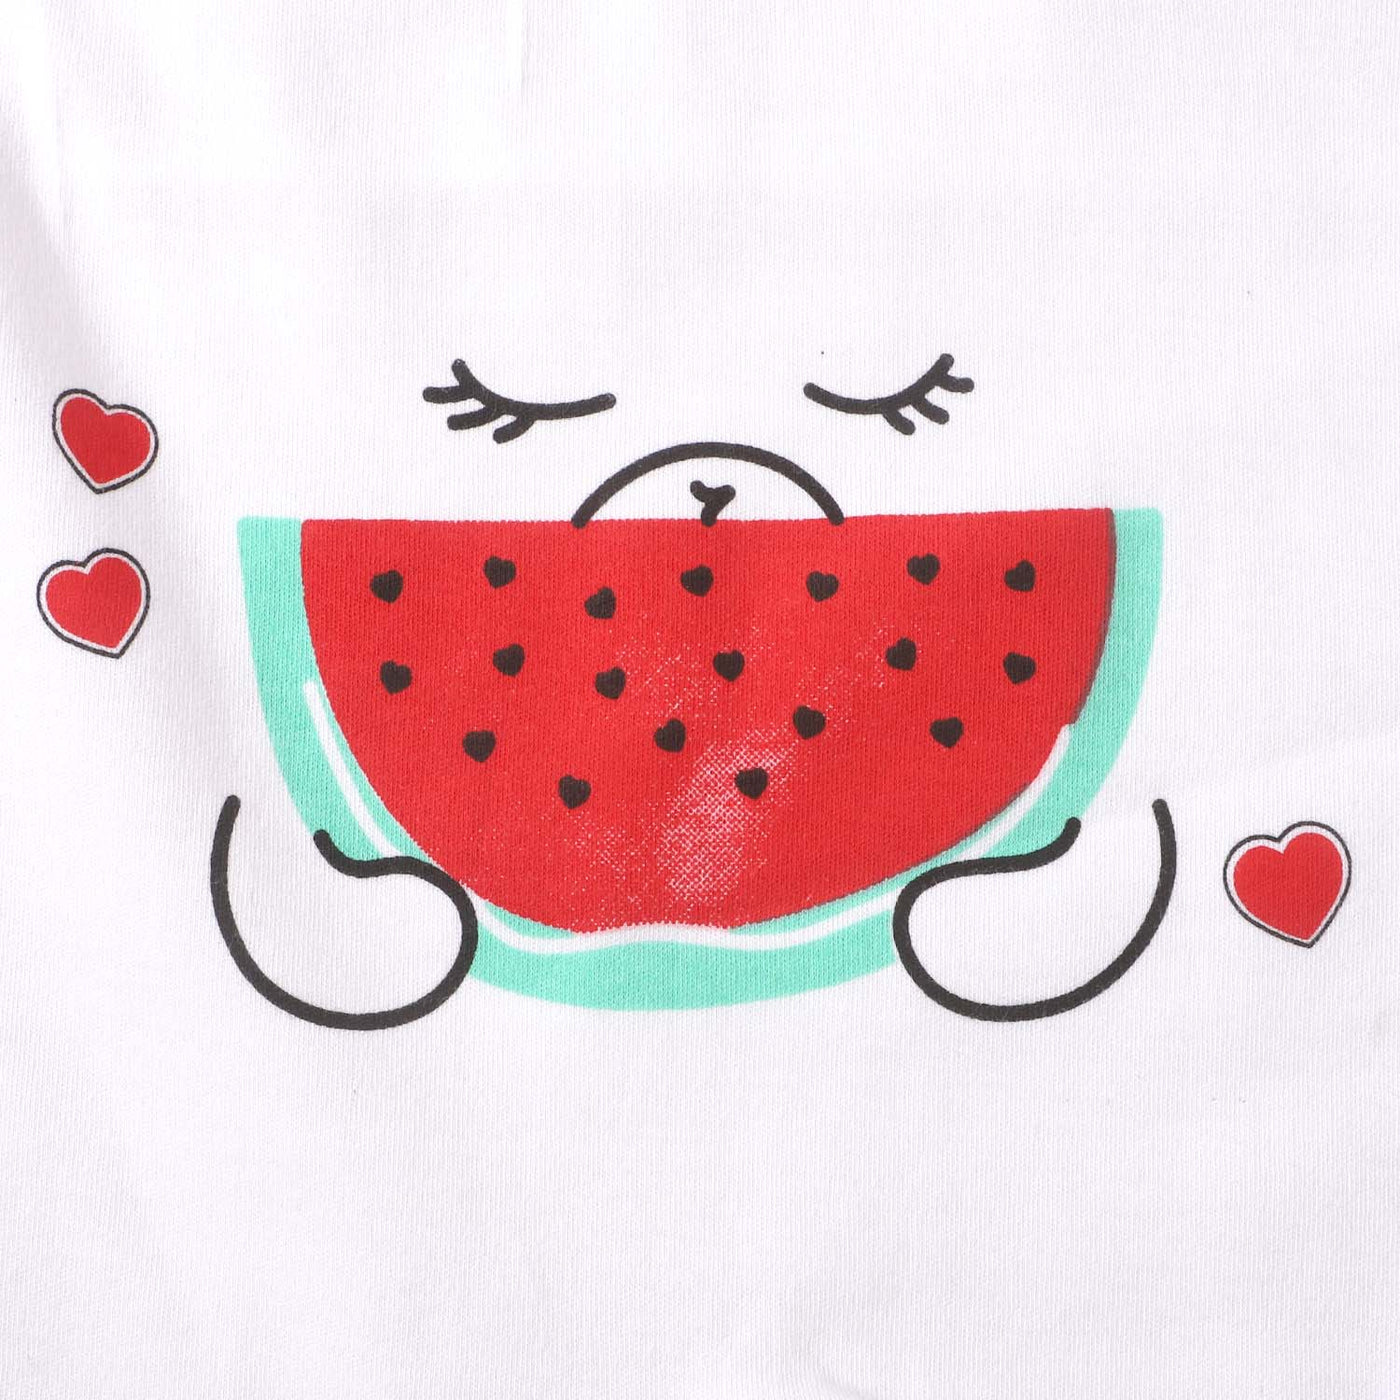 Infant Girls Knitted Romper Watermelon - White